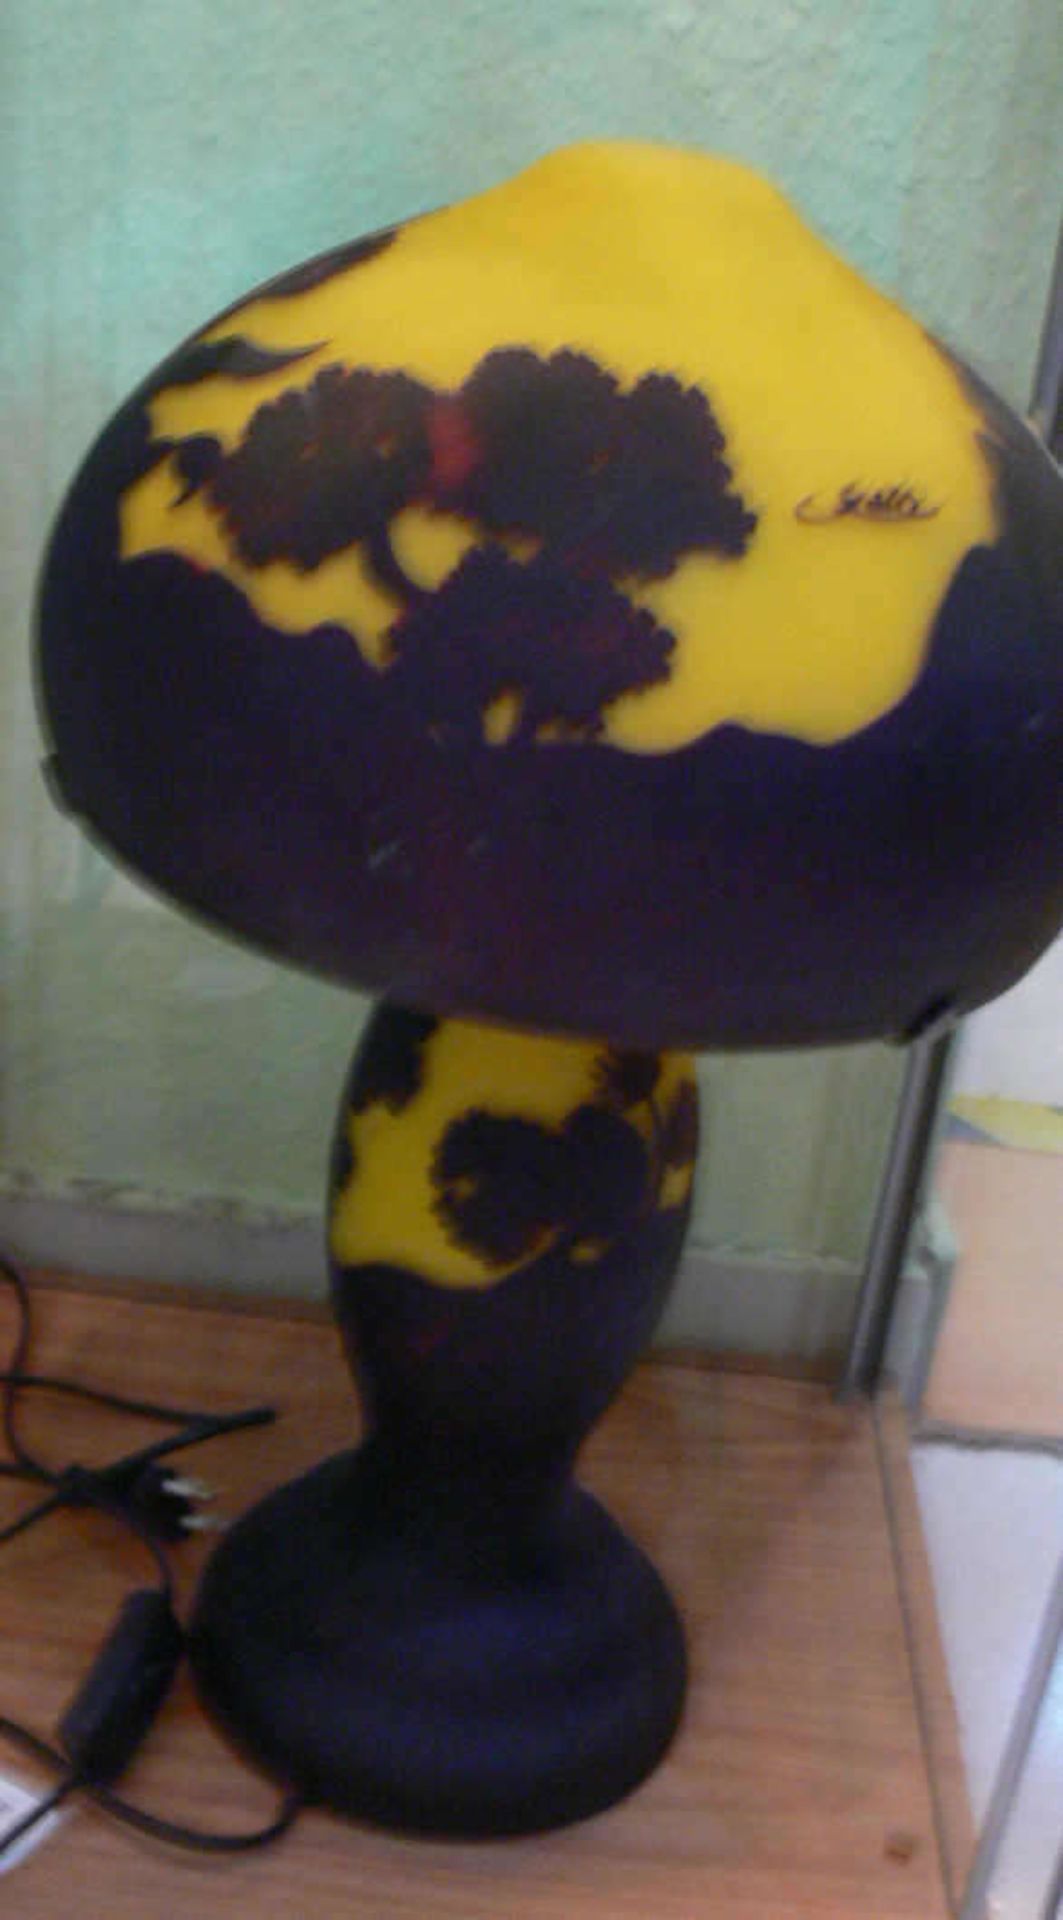 Tischlampe Jugendstil, Typ Gallei Vase, gelblich mit schwarz überhangen, ca. 50cm hoch Table lamp